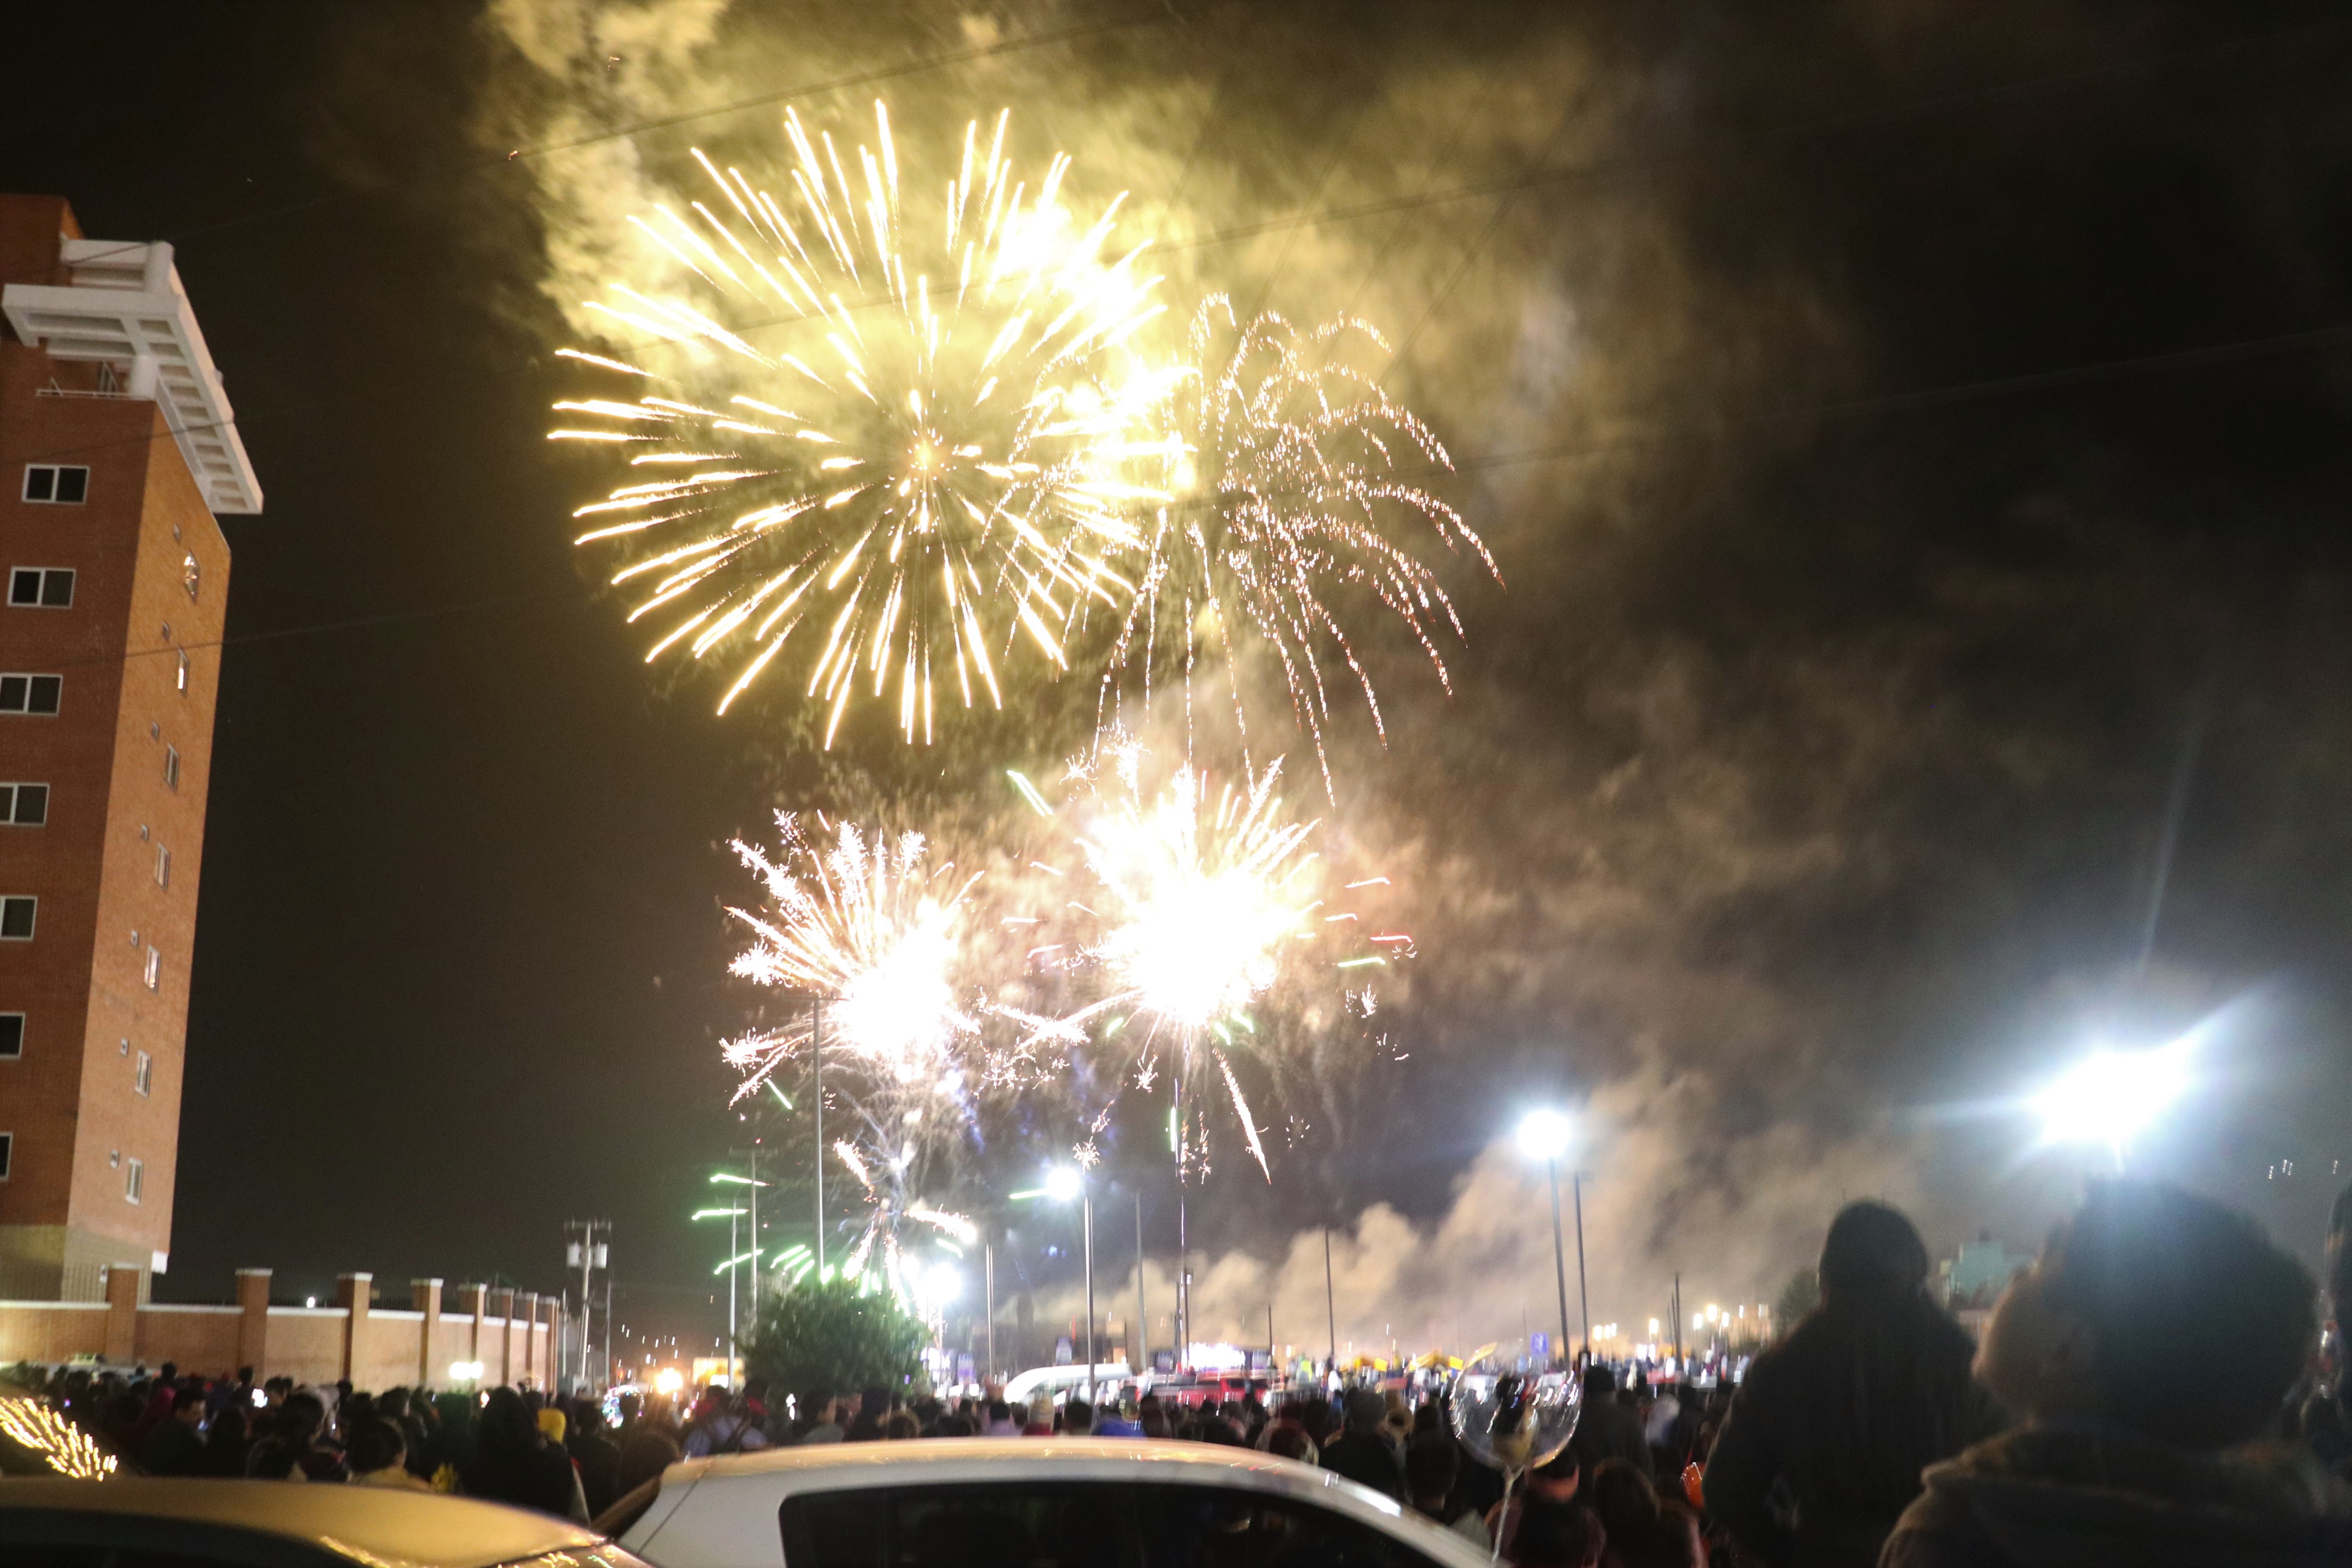 Durante cerca de 20 minutos los quetzaltecos disfrutaron del espectáculo que iluminó el cielo. (Foto Prensa Libre: Raúl Juárez)